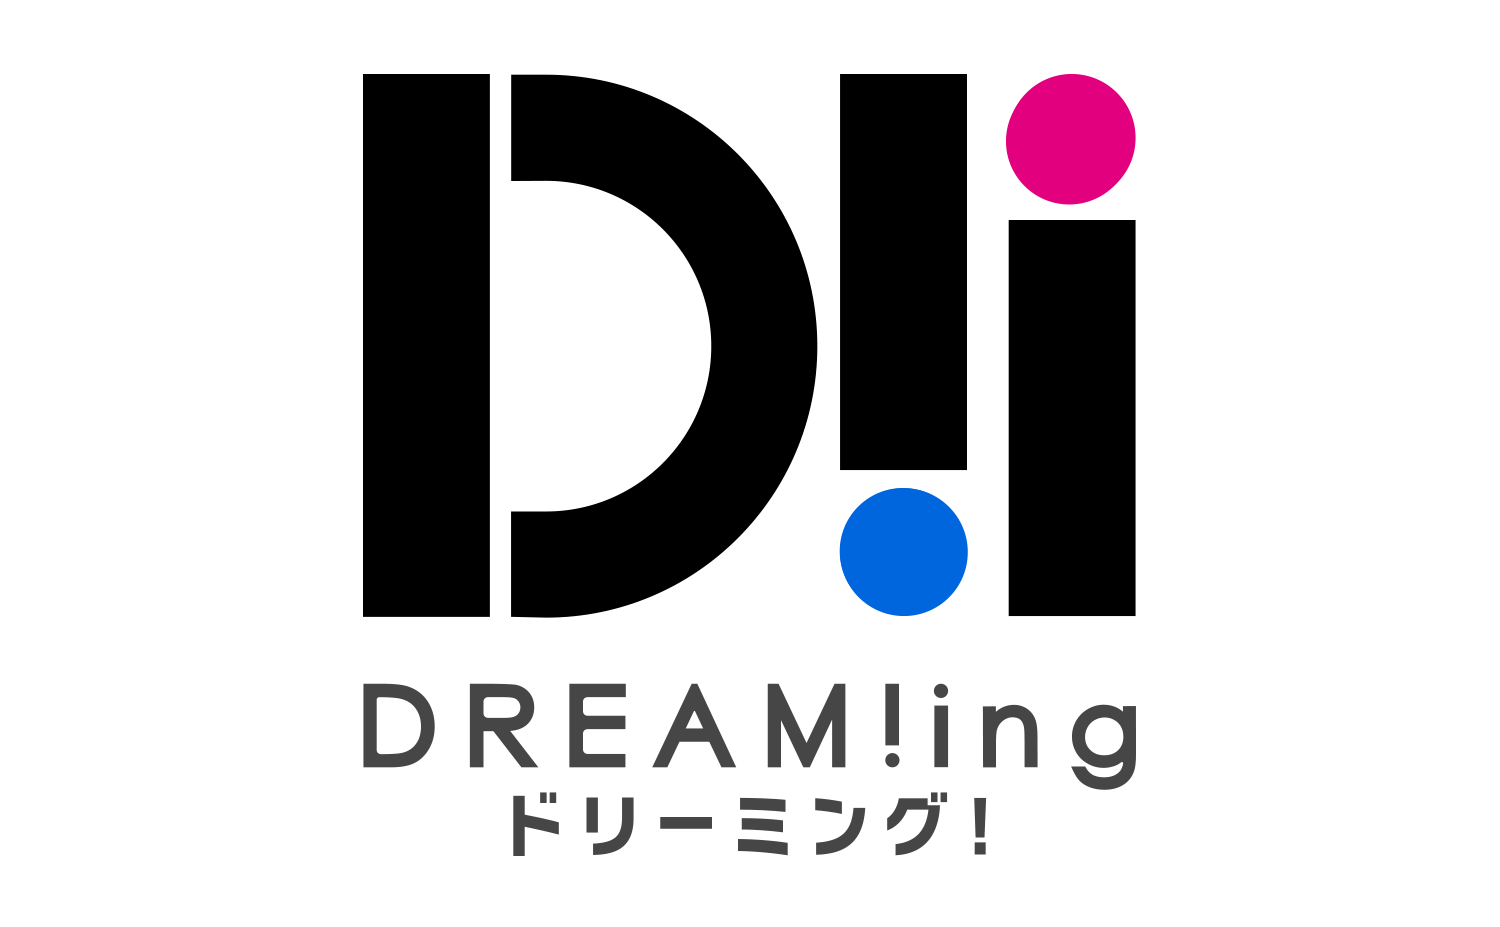 21 3 24発売 ドラマcd Dream Ing ぶらり 冬の東京観光 のジャケットイラスト を公開 株式会社アニメイトホールディングスのプレスリリース